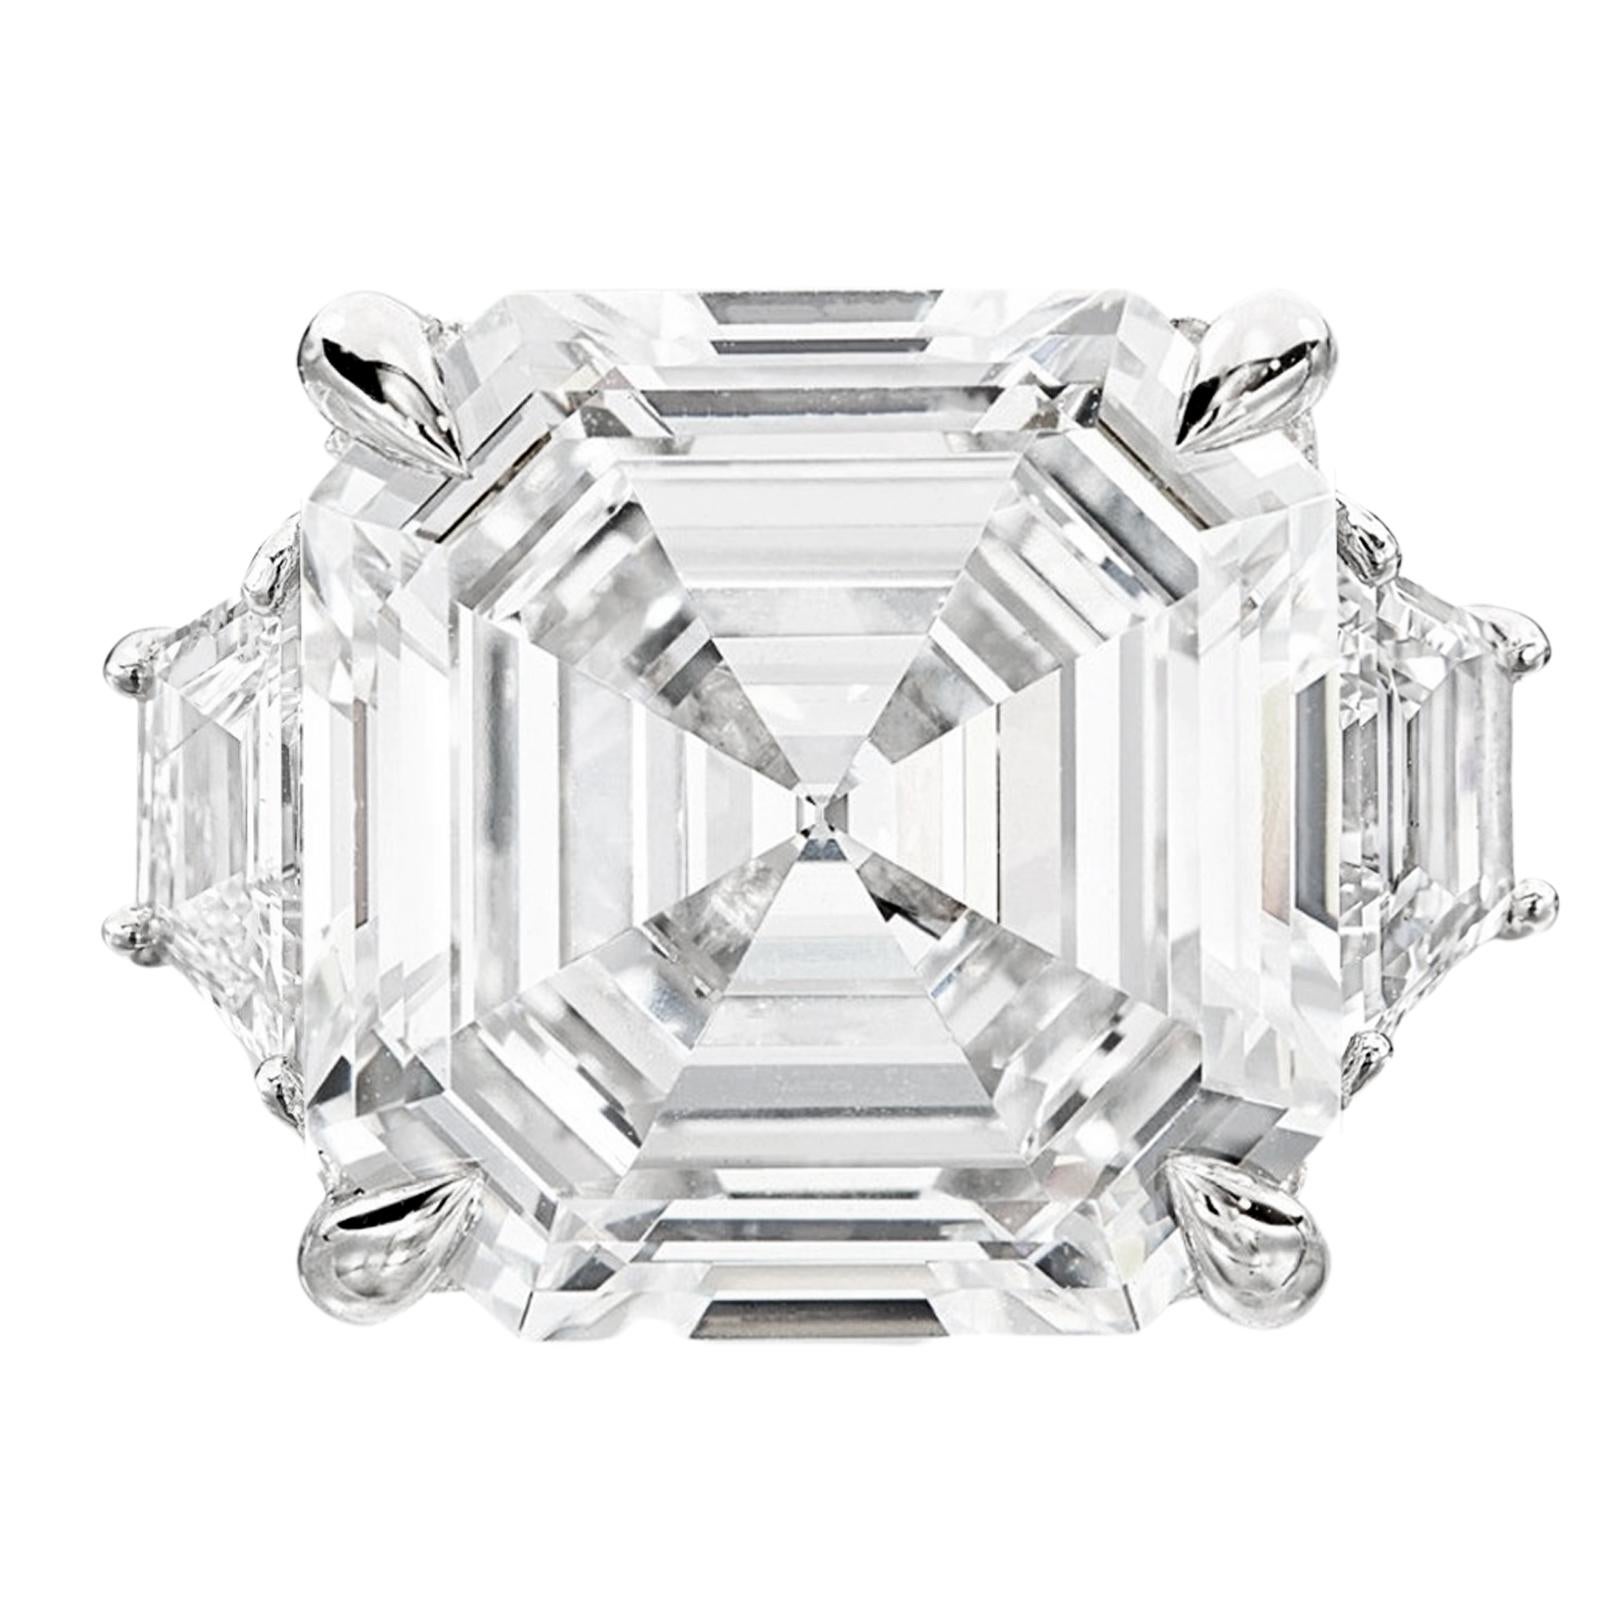 GIA-zertifizierter Diamant im Asscher-Schliff, der Inbegriff von Raffinesse und Investitionswert. Dieser außergewöhnliche Diamant, der in sorgfältiger Handarbeit in massivem Platin gefasst wurde, wird von zwei fesselnden trapezförmigen Diamanten